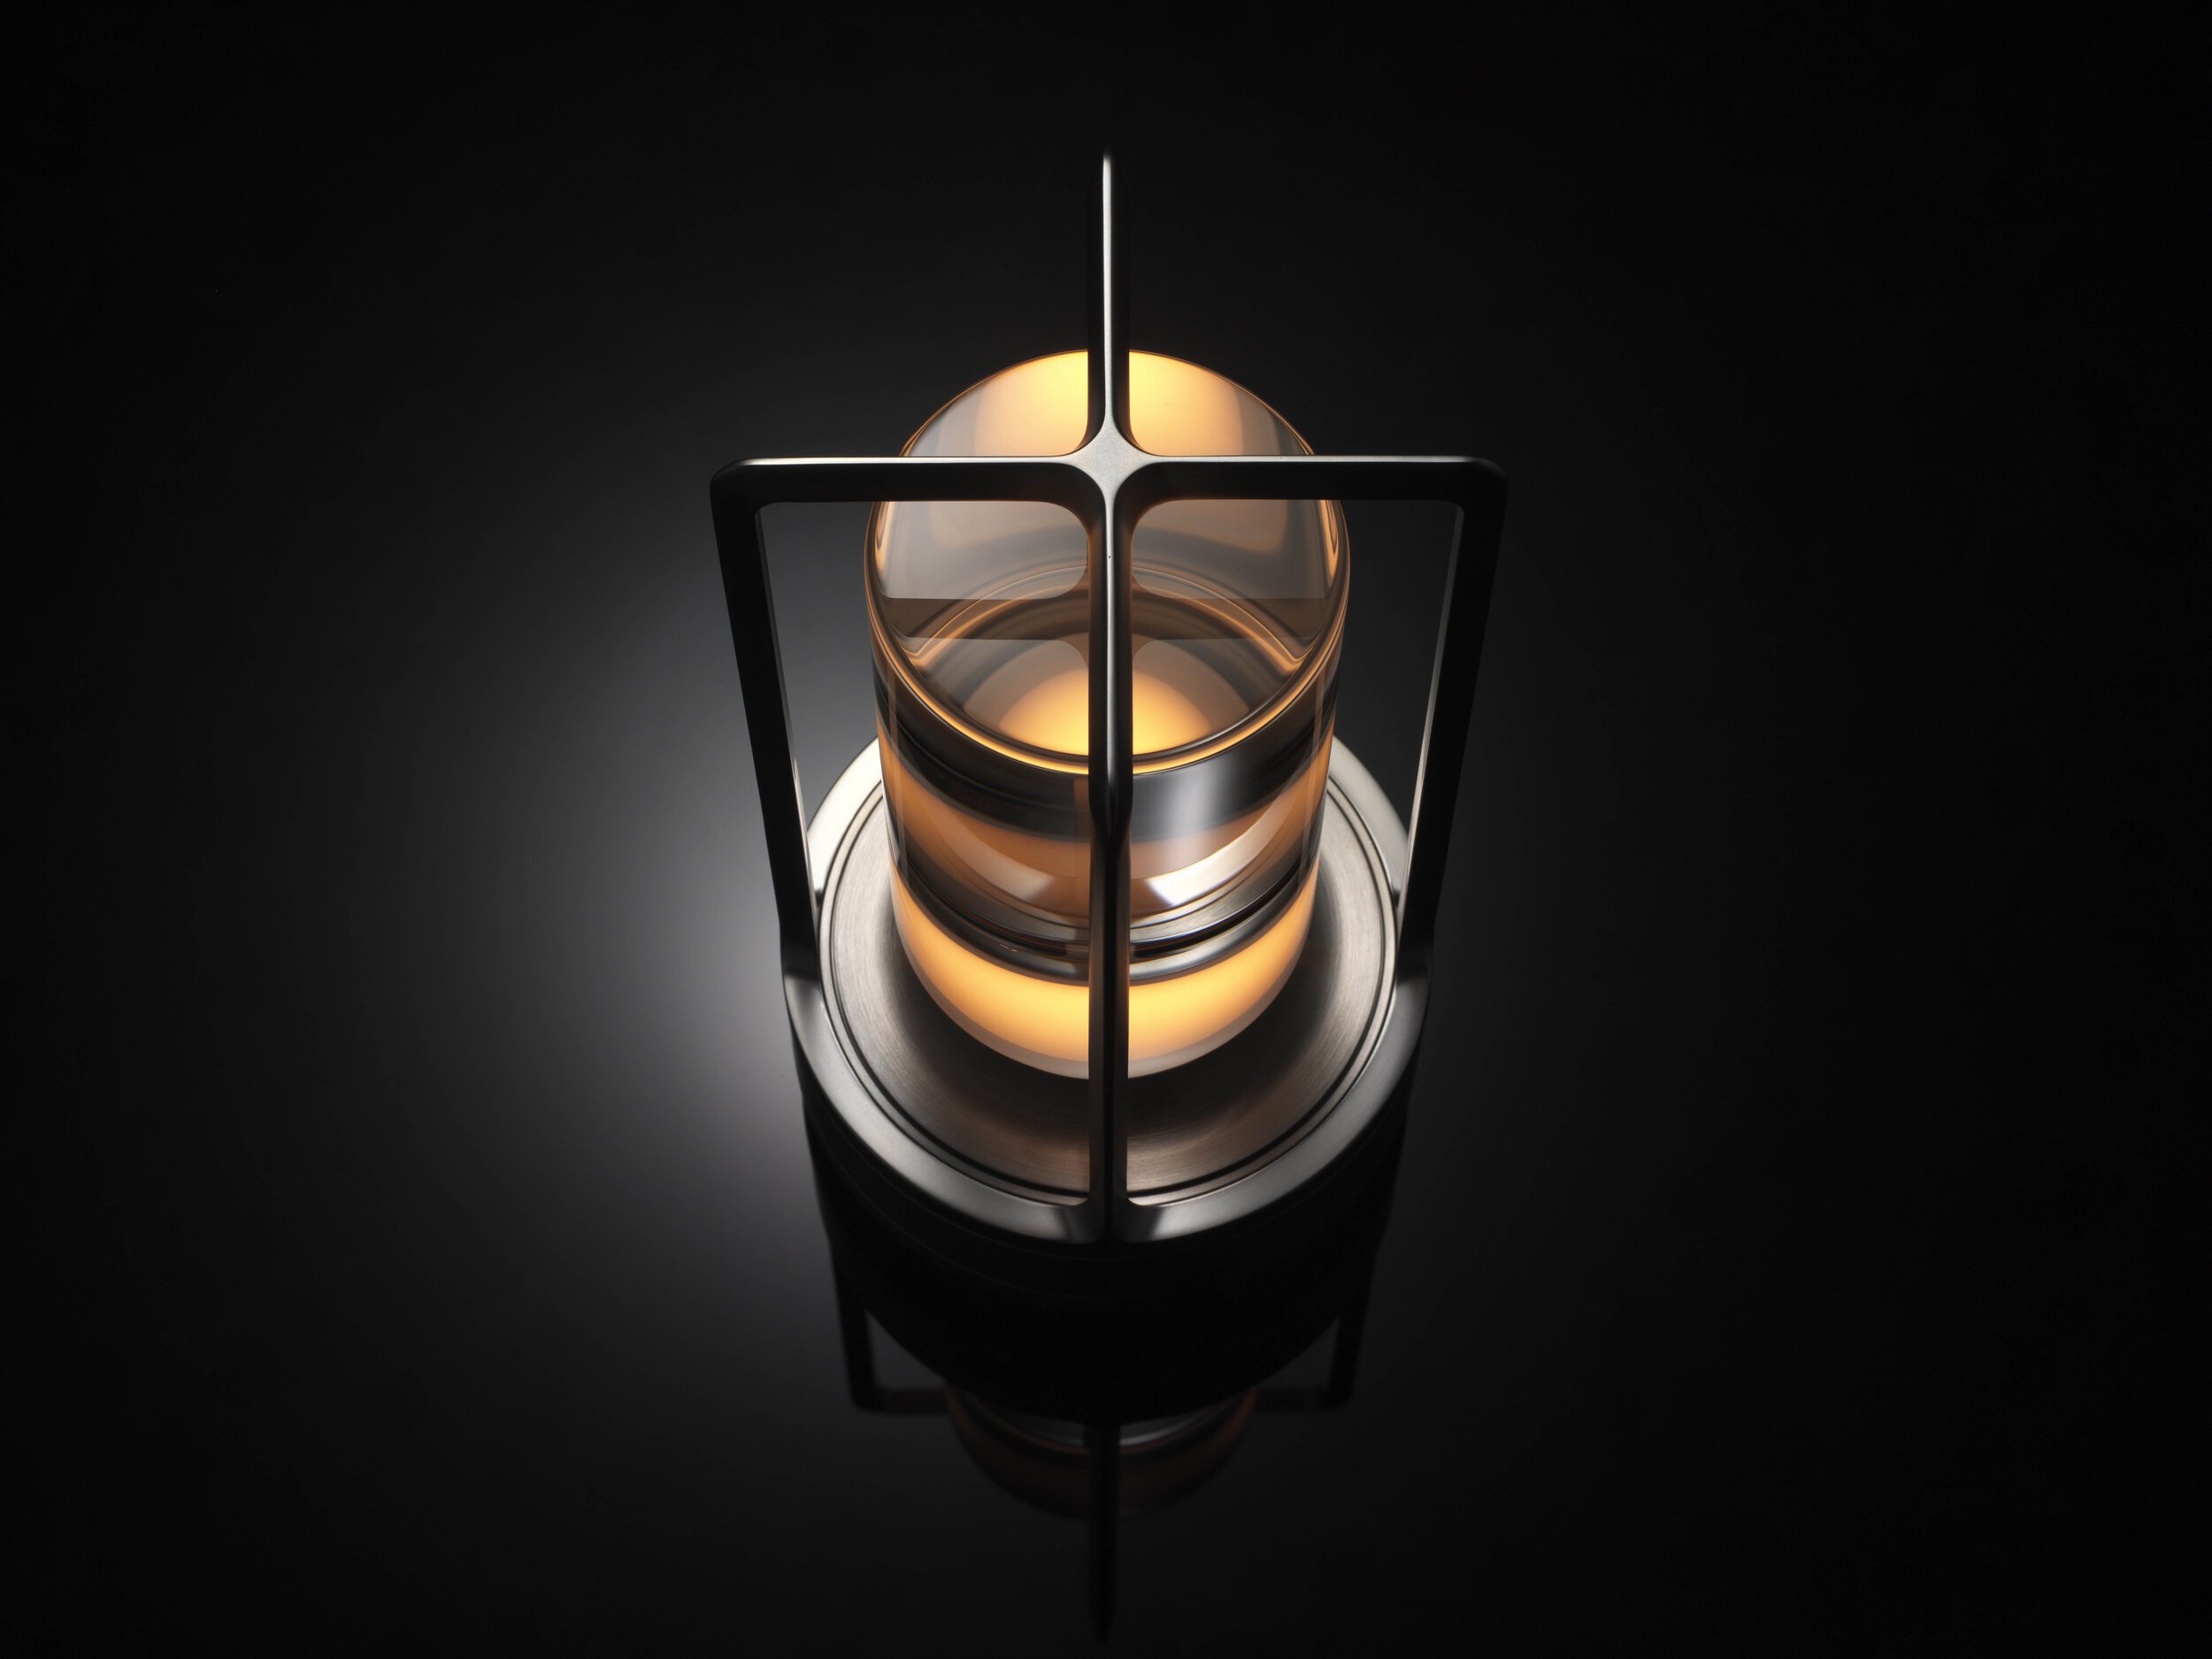  Nao Tamura 田村奈穂がデザインを手掛けた、アンビエンテックの照明器具「TURN+（ターンプラス）」。シェード部分はクリスタルガラス 